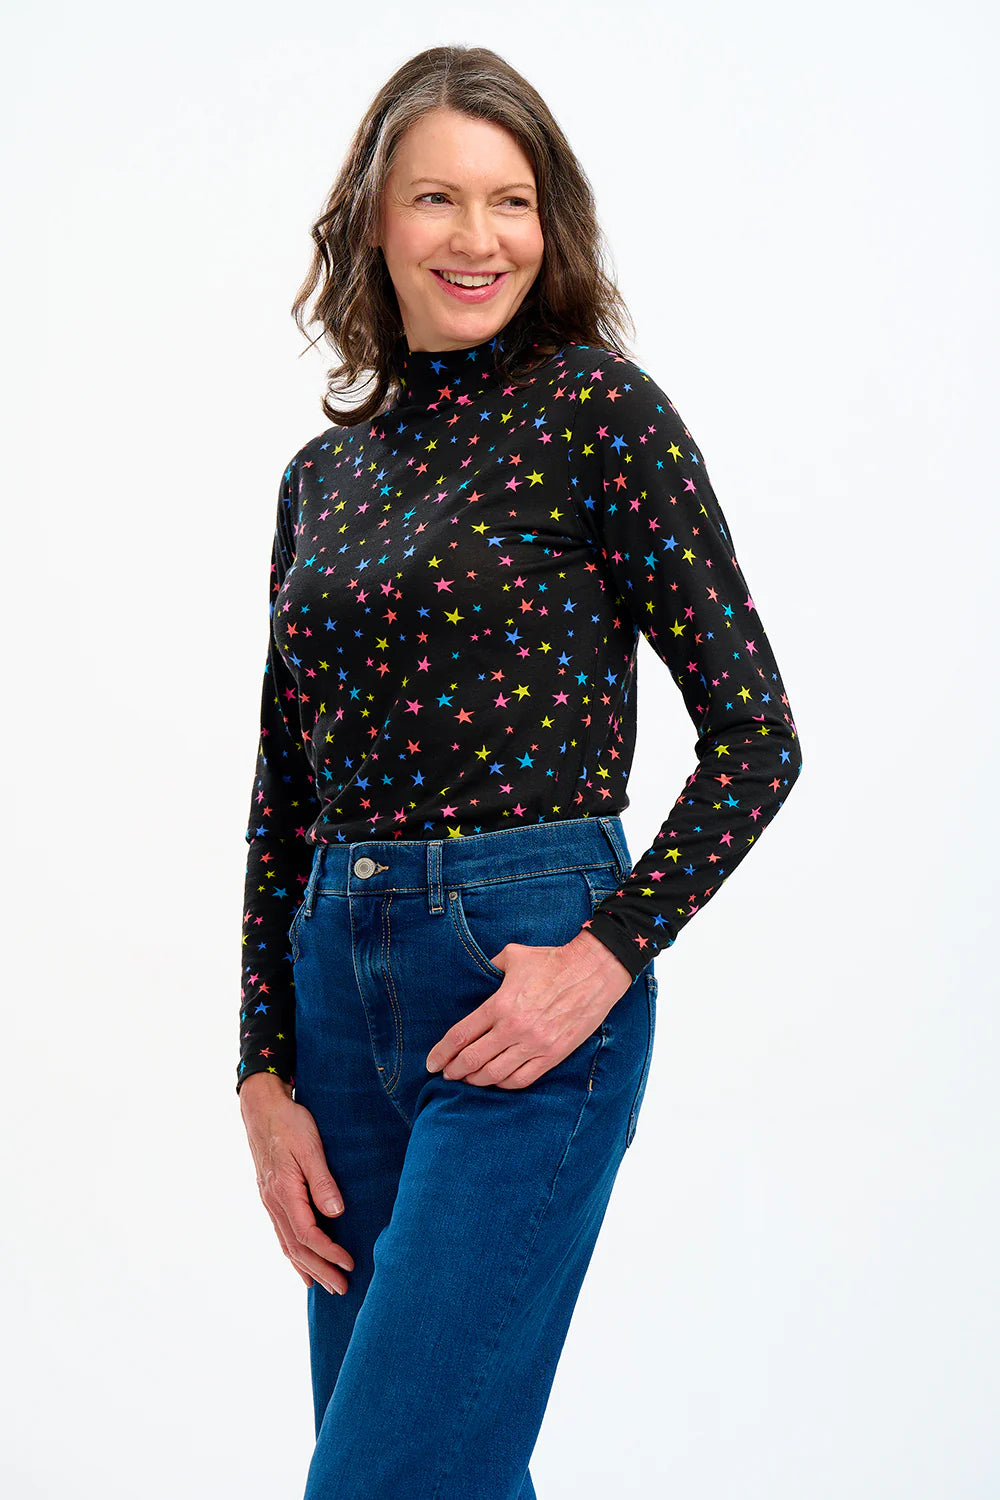 SUGARHILL BRIGHTON-Annika Jersey Top - Black, Rainbow Star Confetti